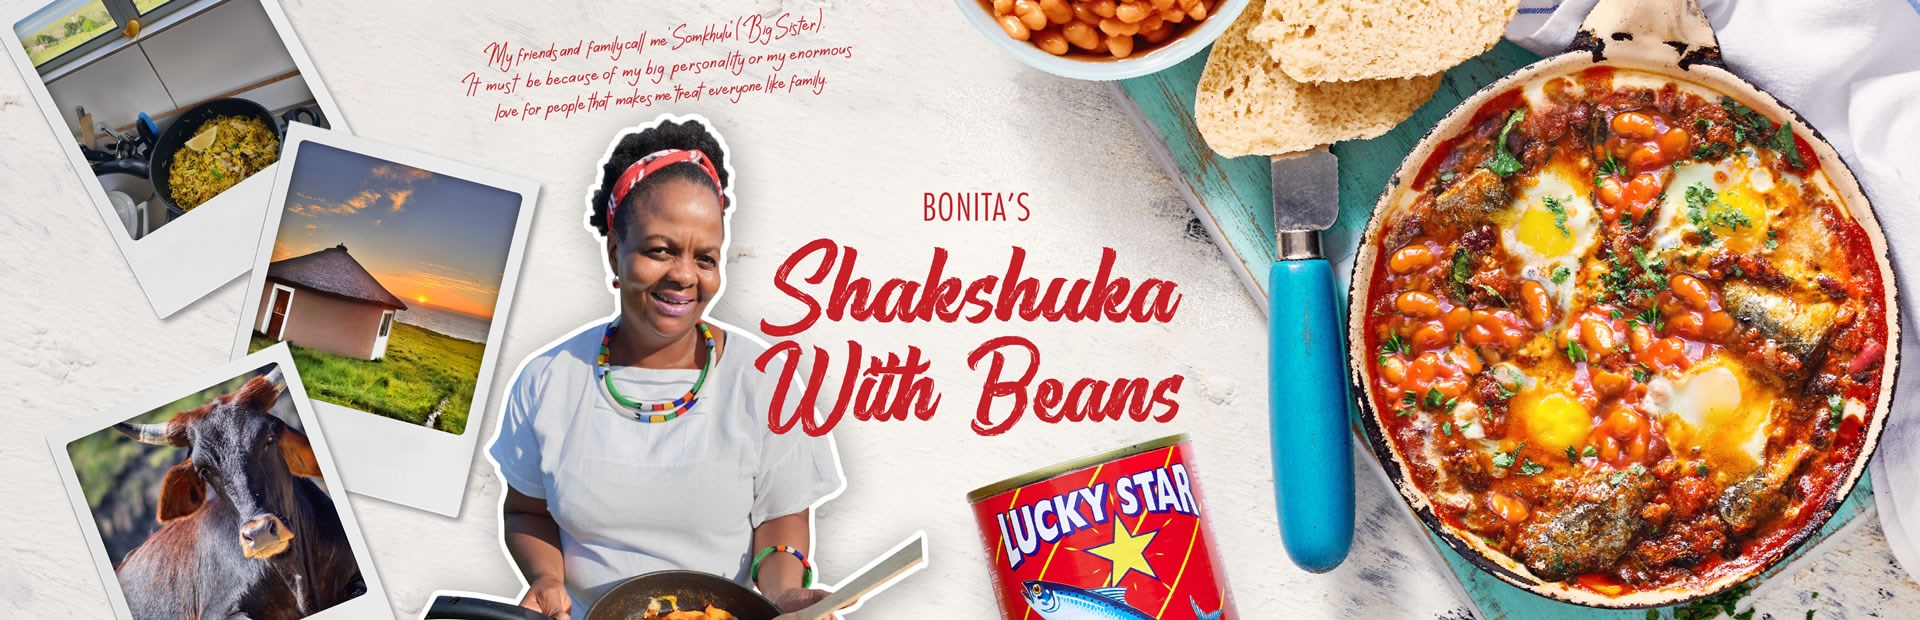 BONITA’S Shakshuka With Beans